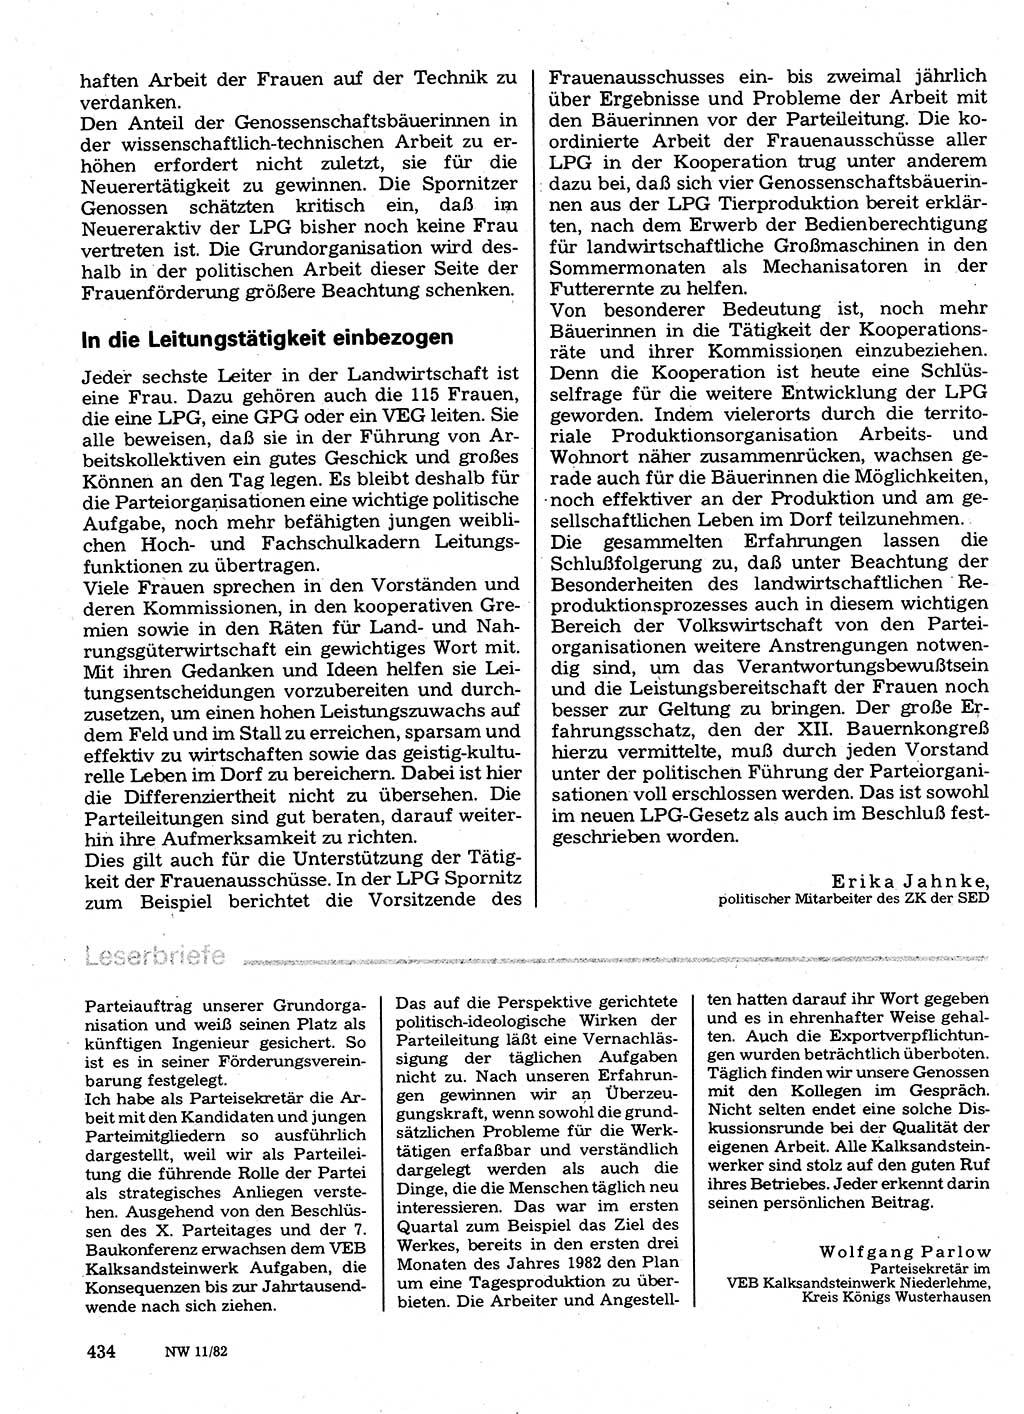 Neuer Weg (NW), Organ des Zentralkomitees (ZK) der SED (Sozialistische Einheitspartei Deutschlands) für Fragen des Parteilebens, 37. Jahrgang [Deutsche Demokratische Republik (DDR)] 1982, Seite 434 (NW ZK SED DDR 1982, S. 434)